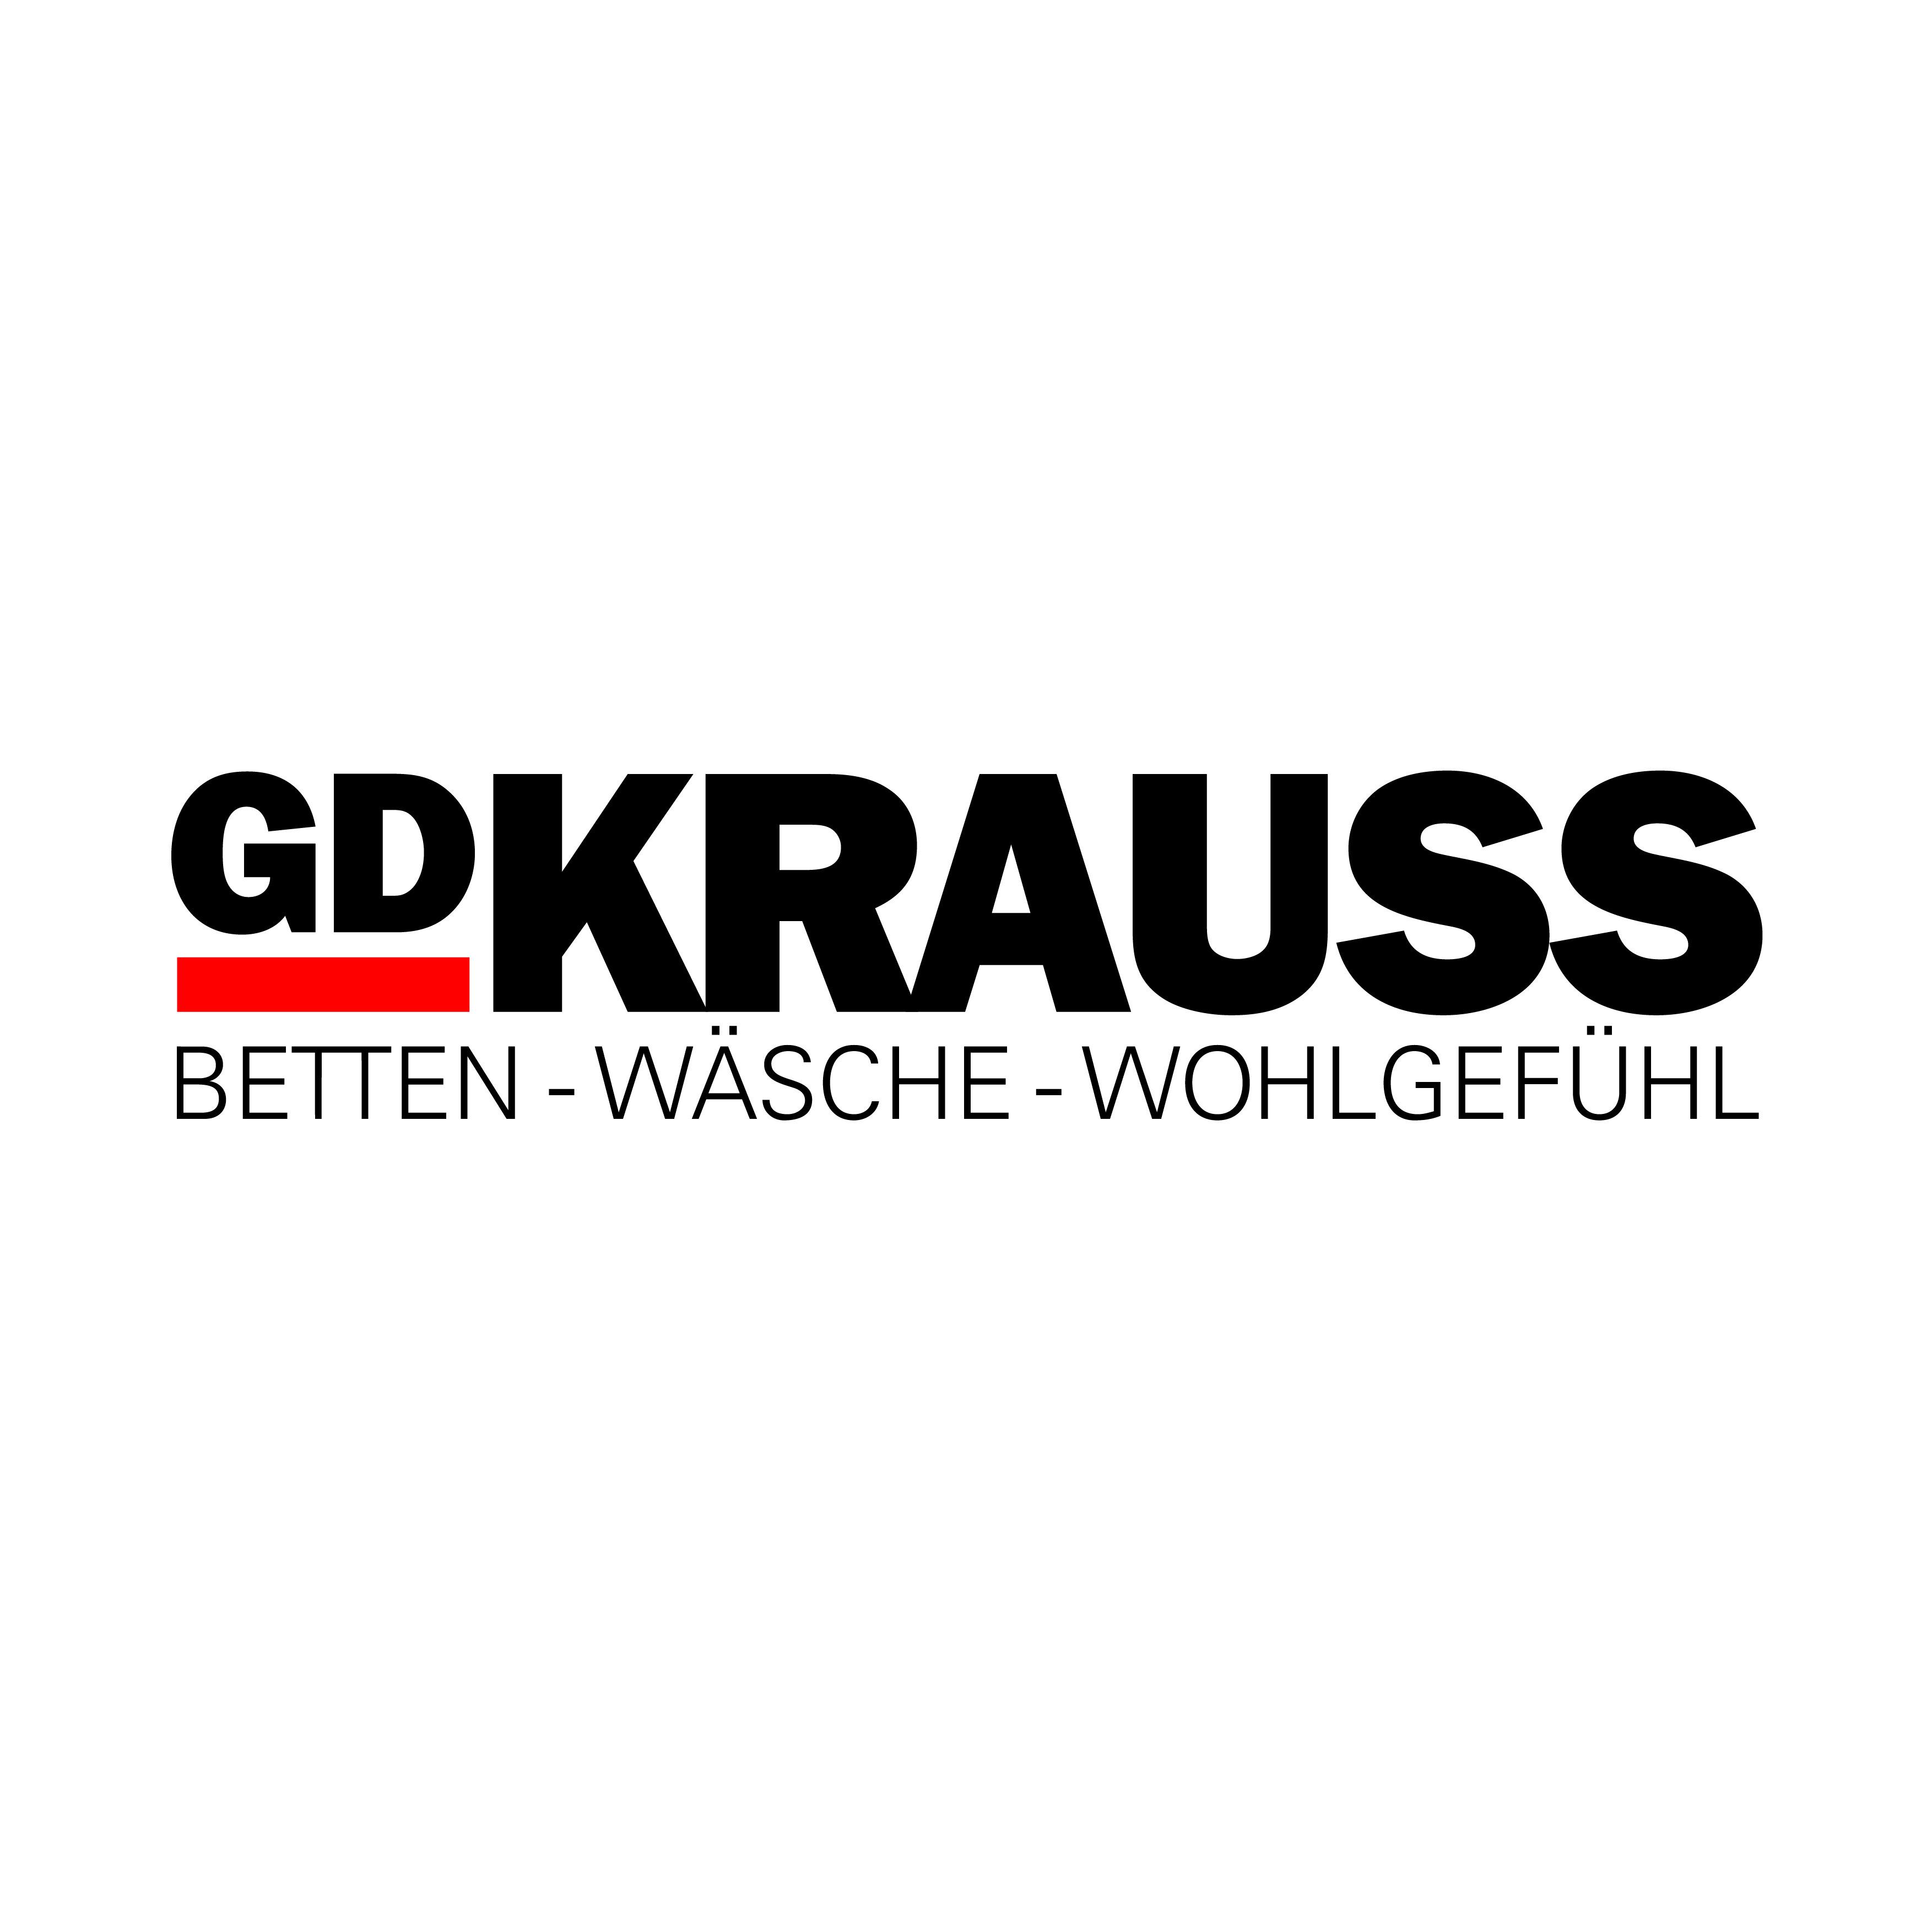 G. D. Krauss - Das Bettenhaus in Aalen - Logo